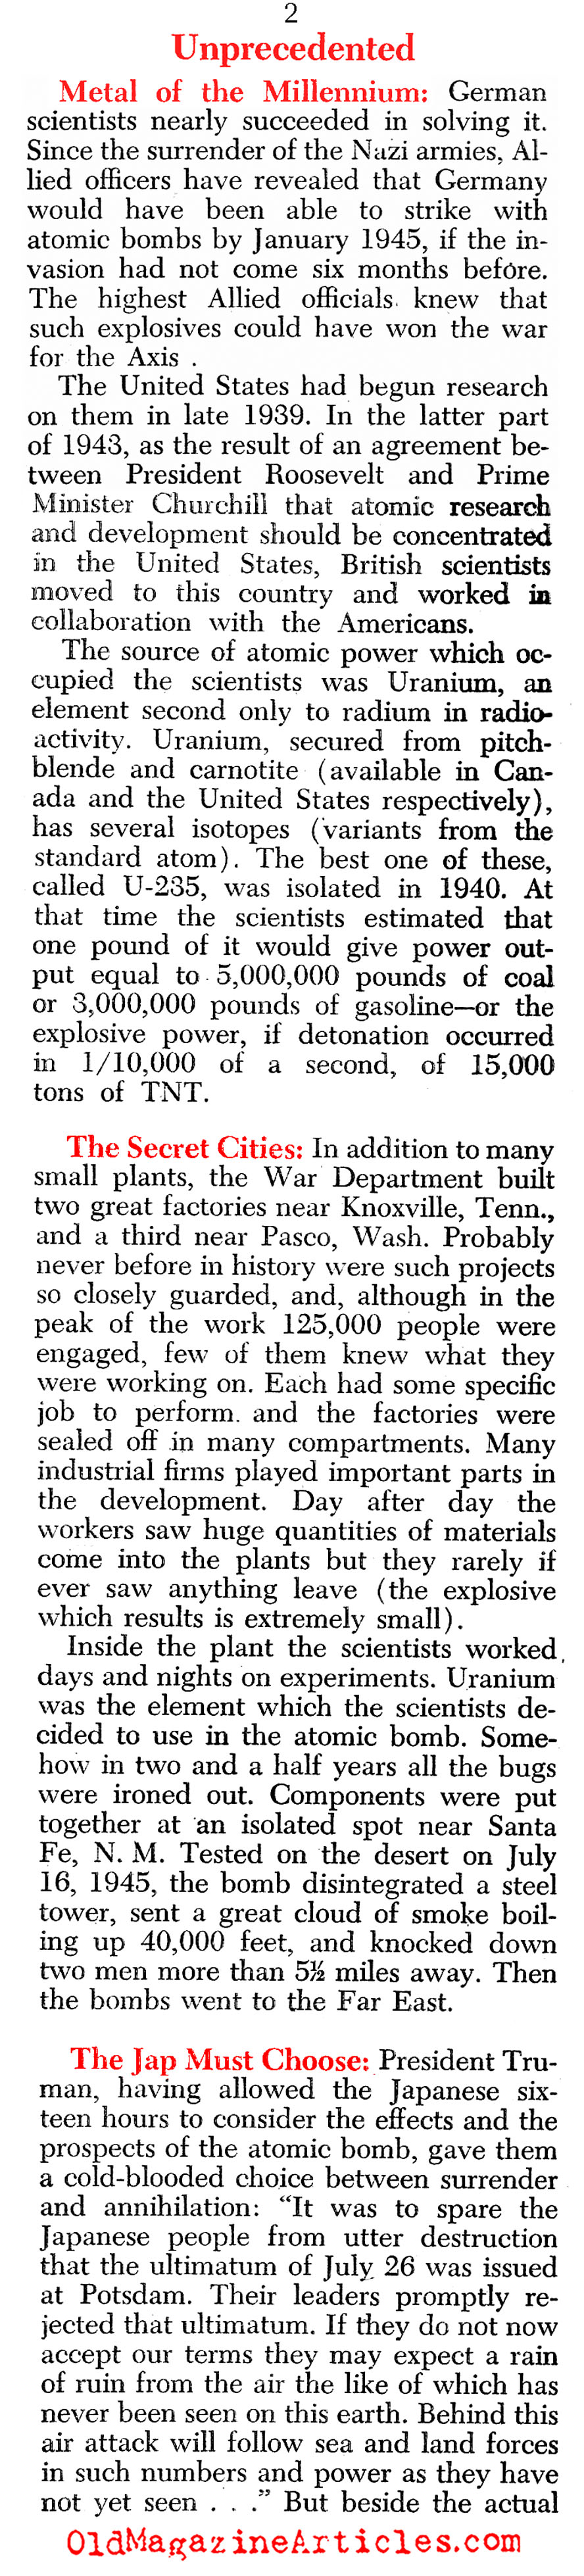 The Atomic Age Begins - in Hiroshima (Newsweek Magazine, 1945)